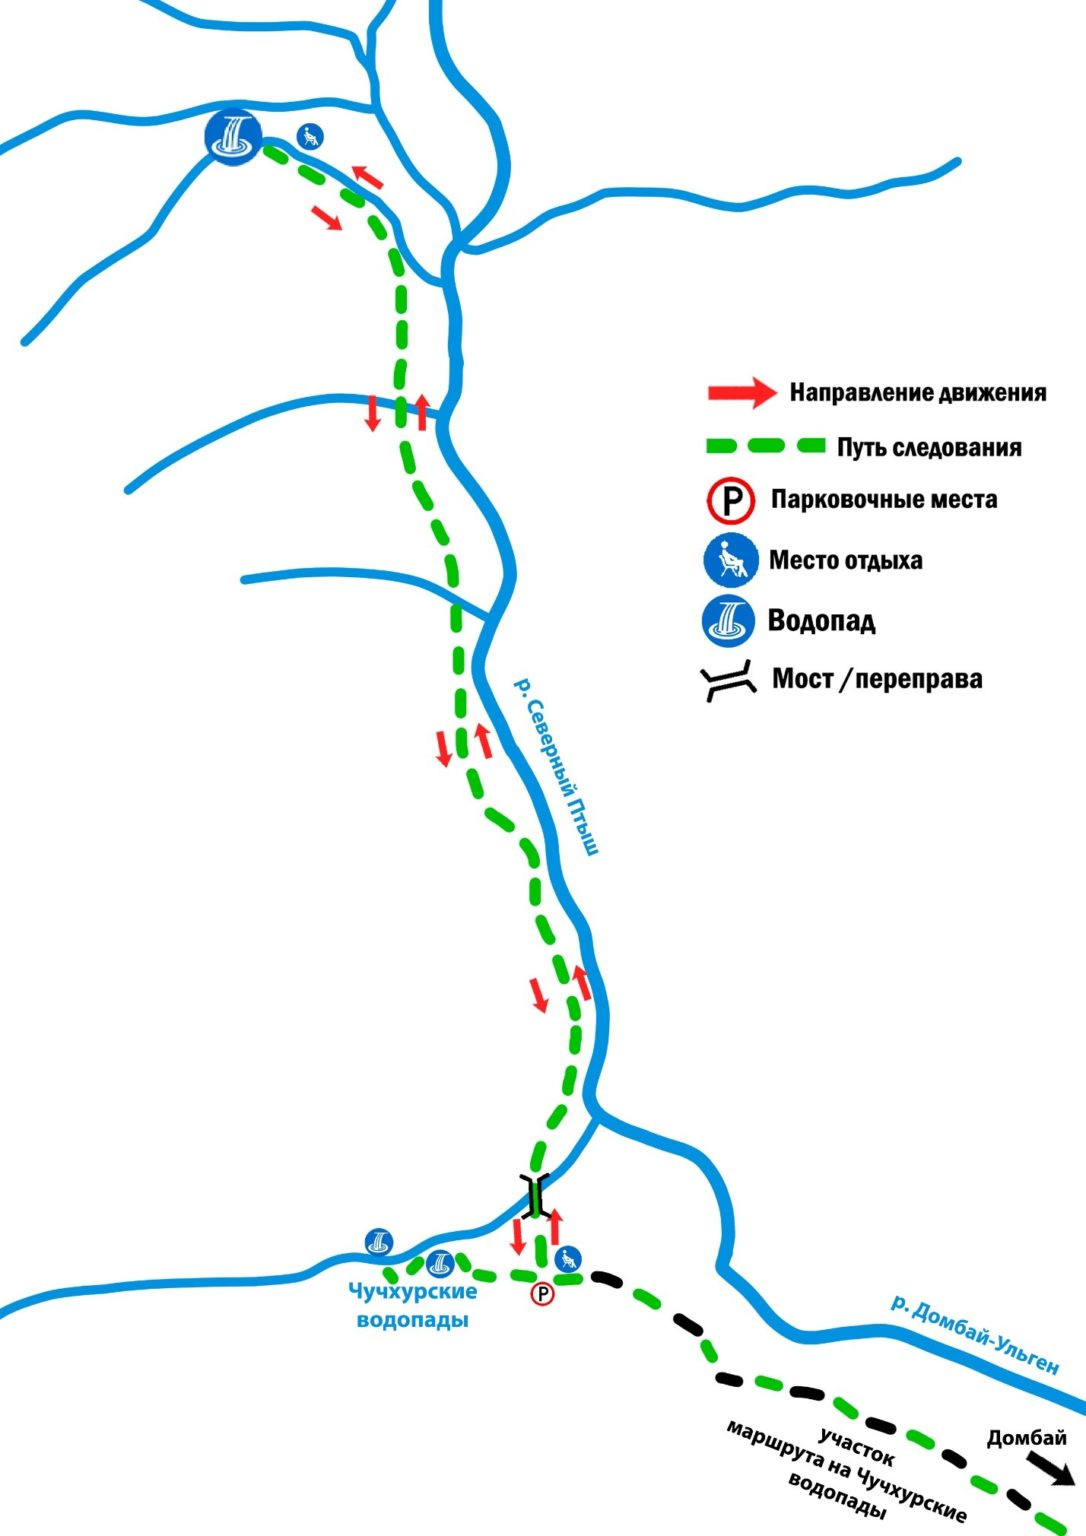 Схема маршрута на Птышский водопад (с сайта https://tgpbz.ru)